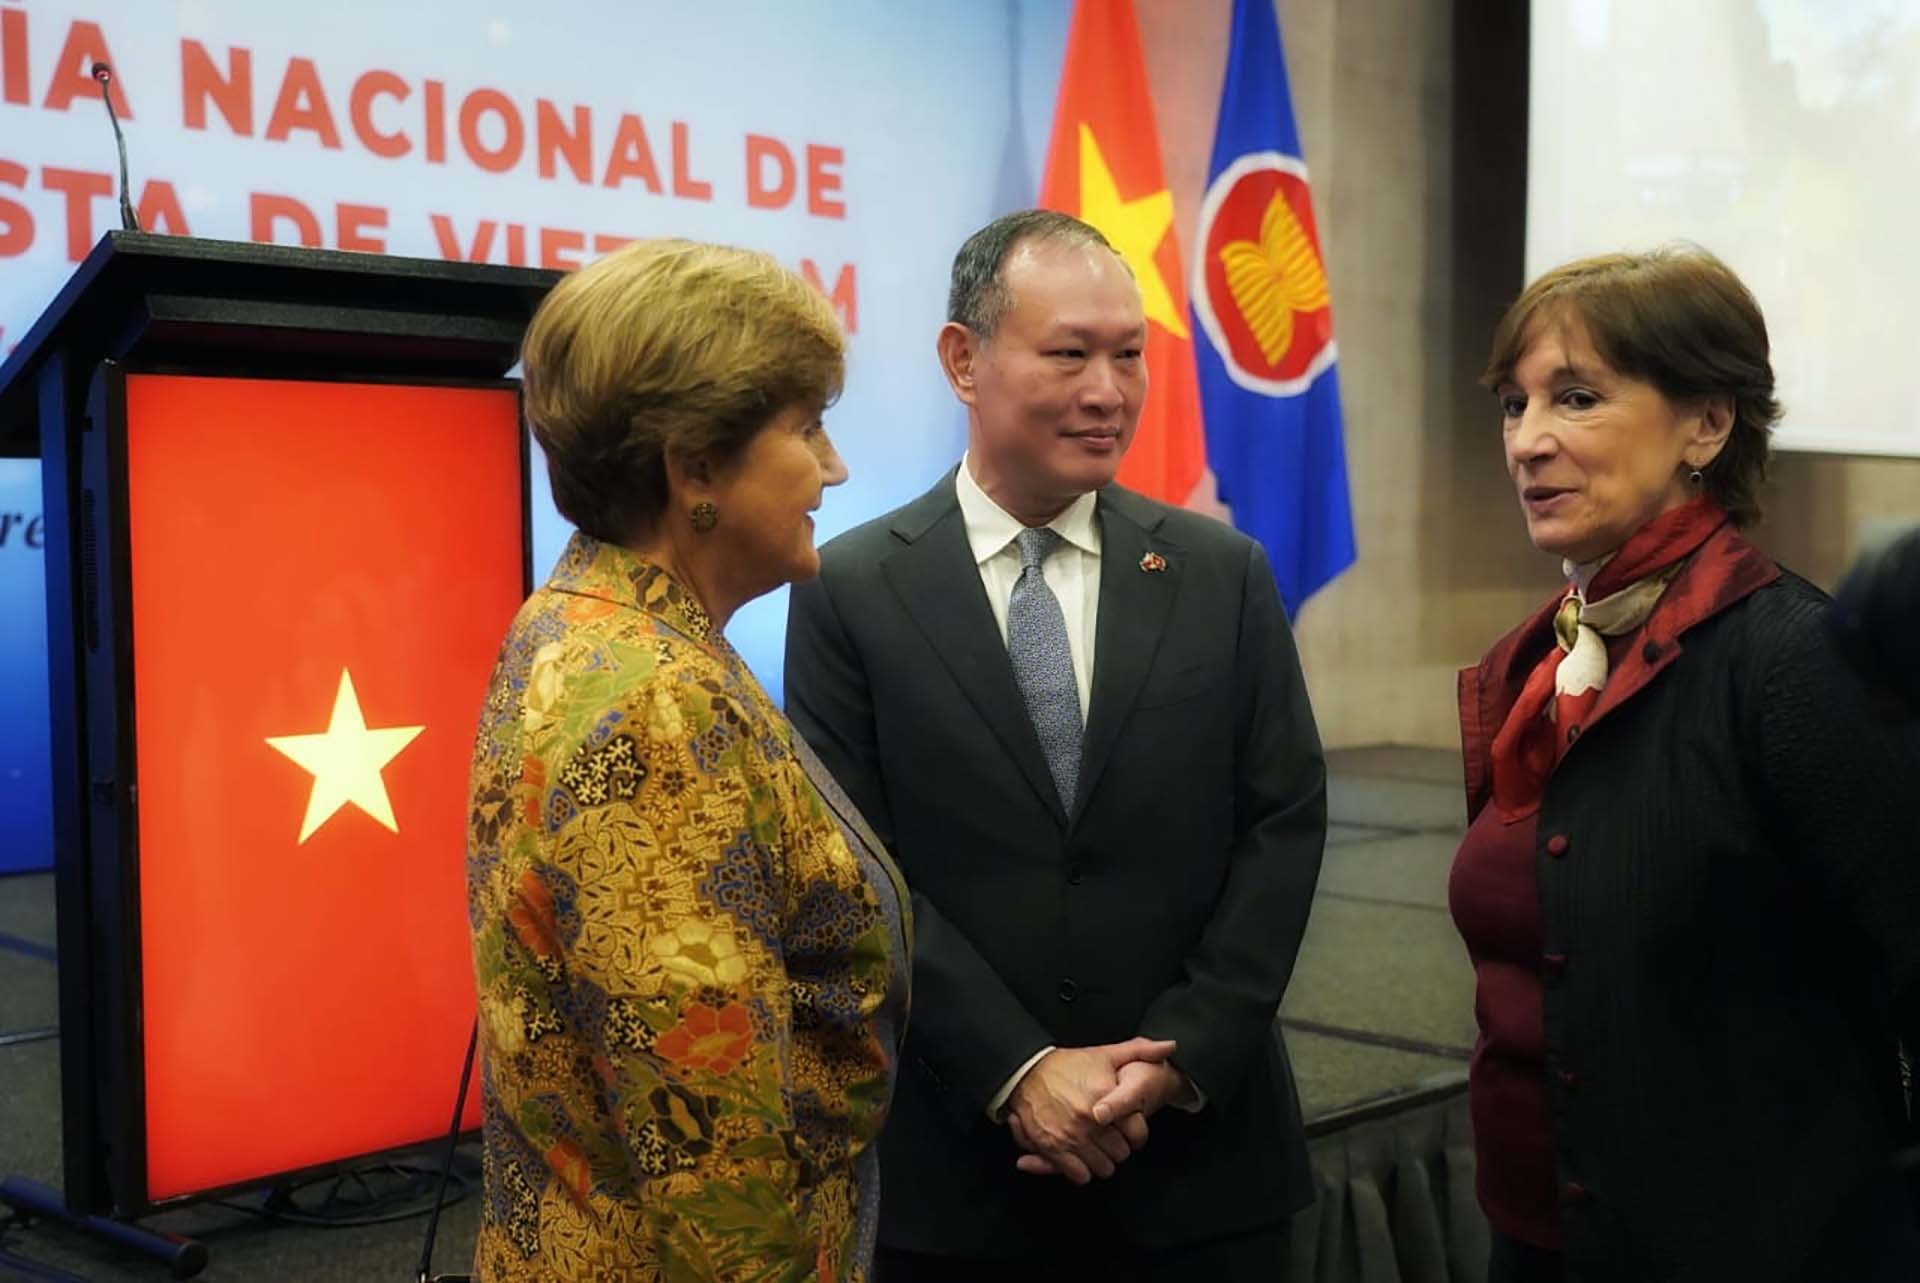 Đại sứ Phạm Trường Gaing trao đổi với cháu của cố Tổng thống Allende bà Denise Pascal Allende và Vụ trưởng Đối ngoại Hạ viện bà Jacqueline Peillard.